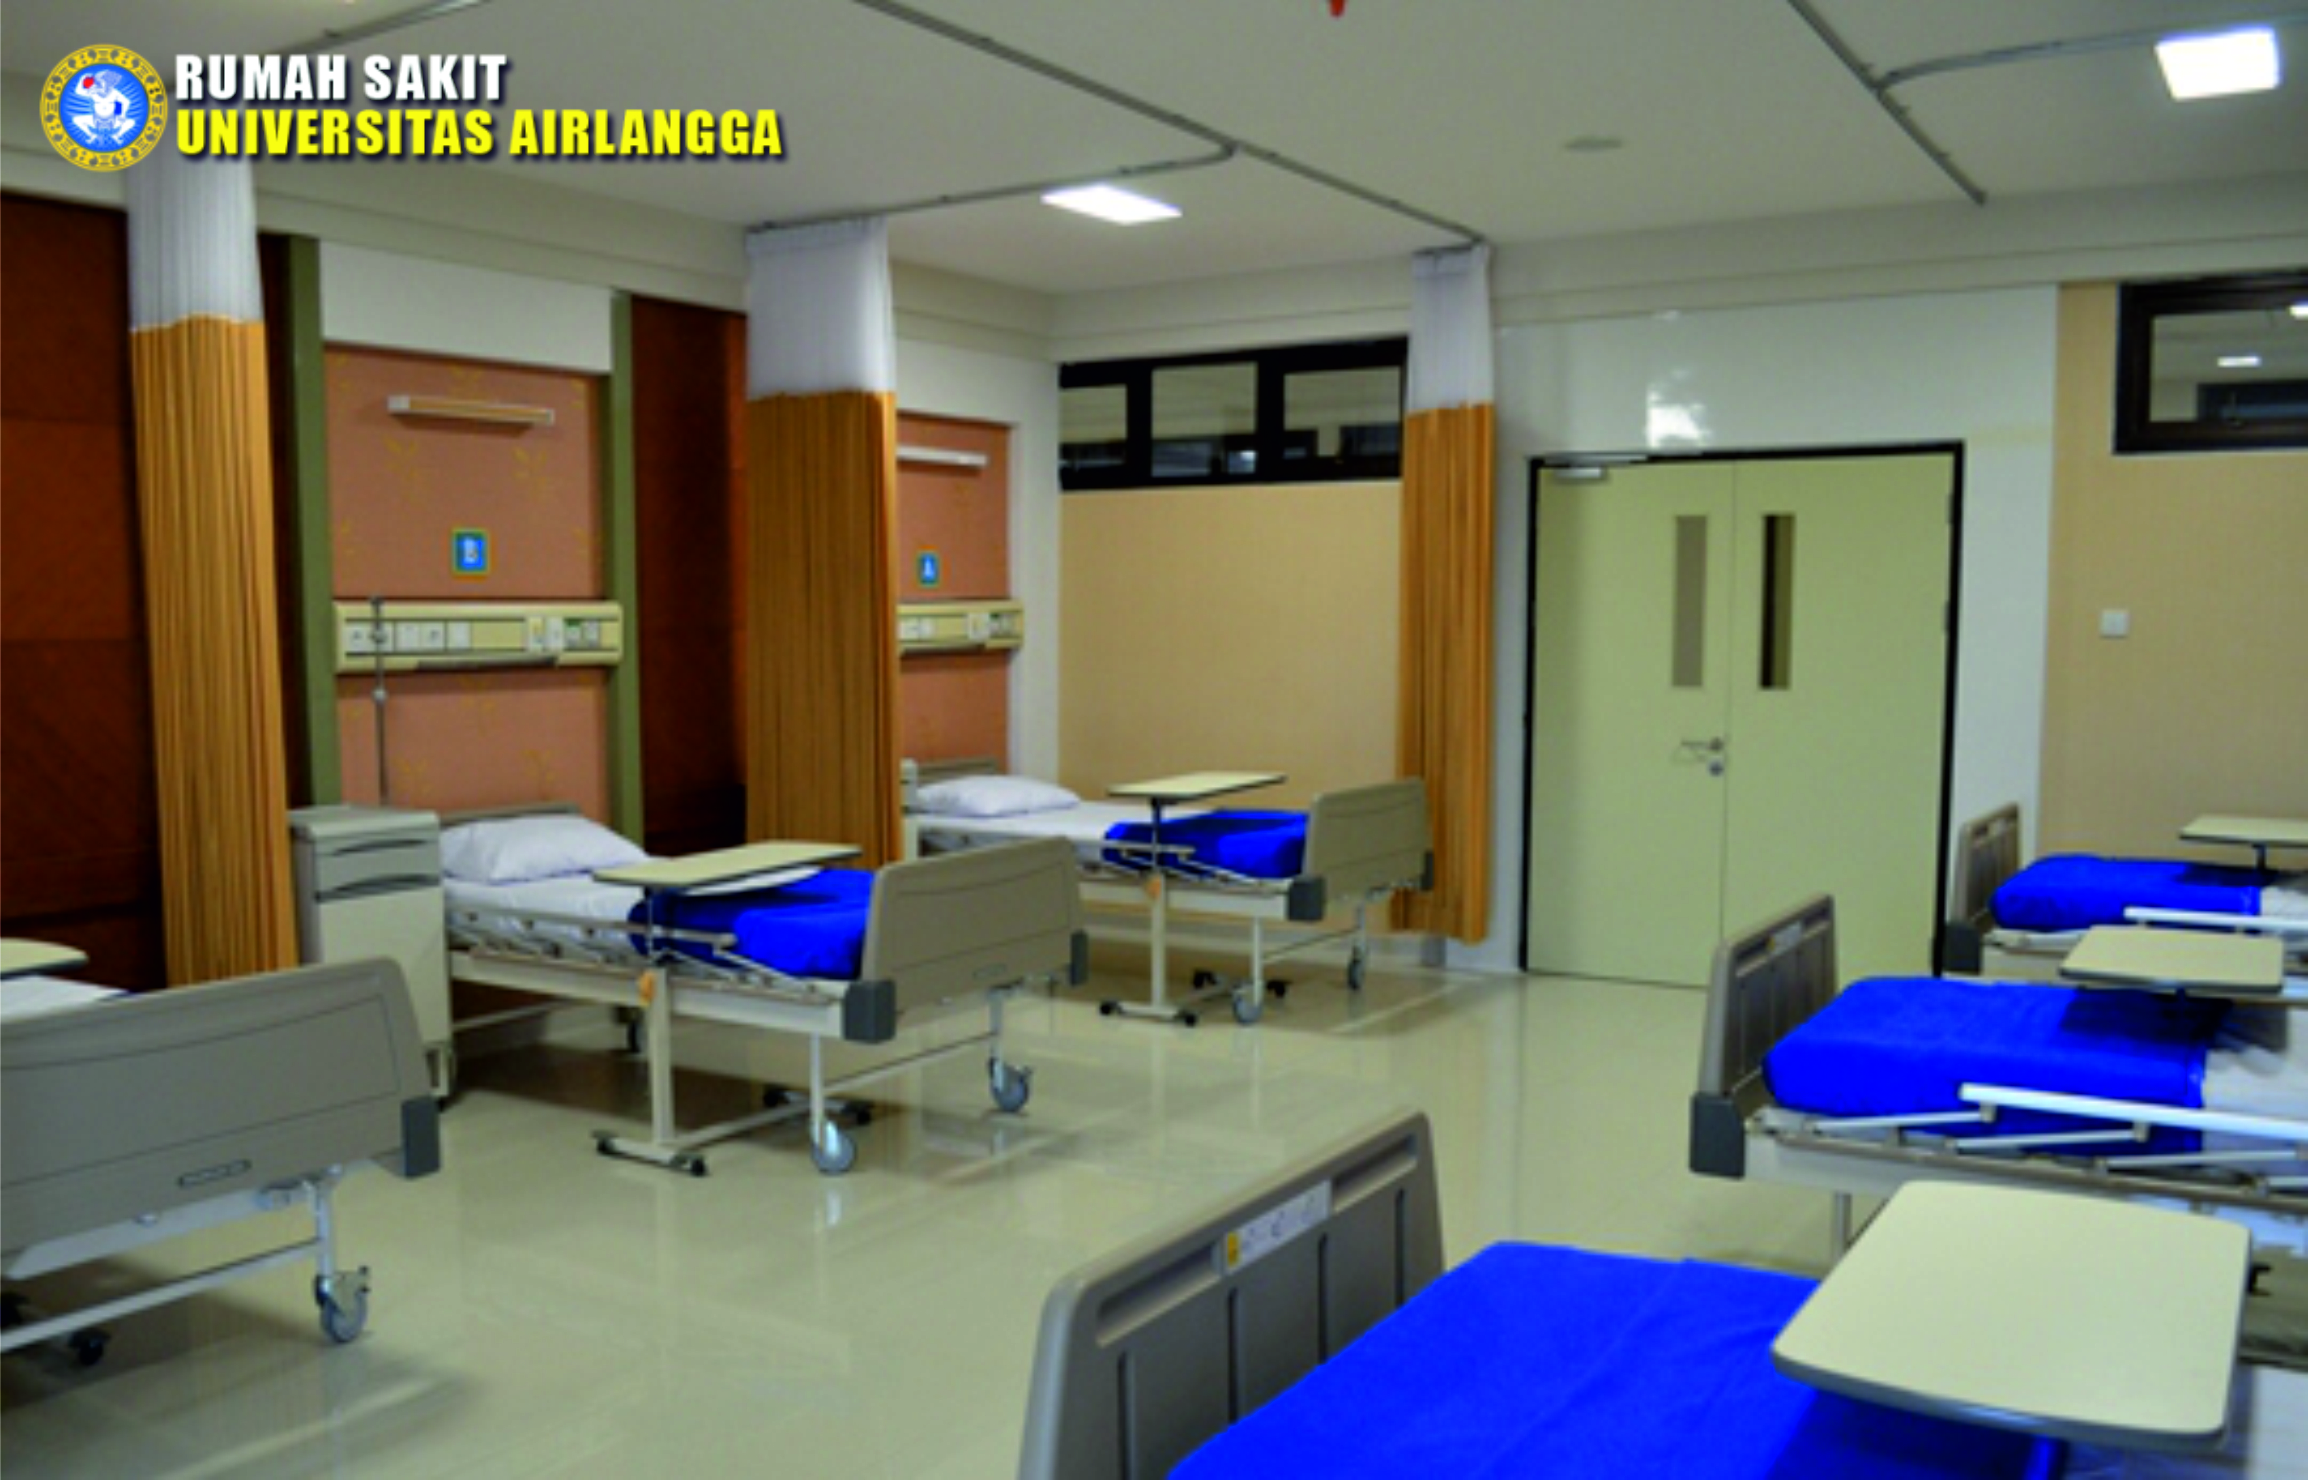 Rumah Sakit Universitas Airlangga